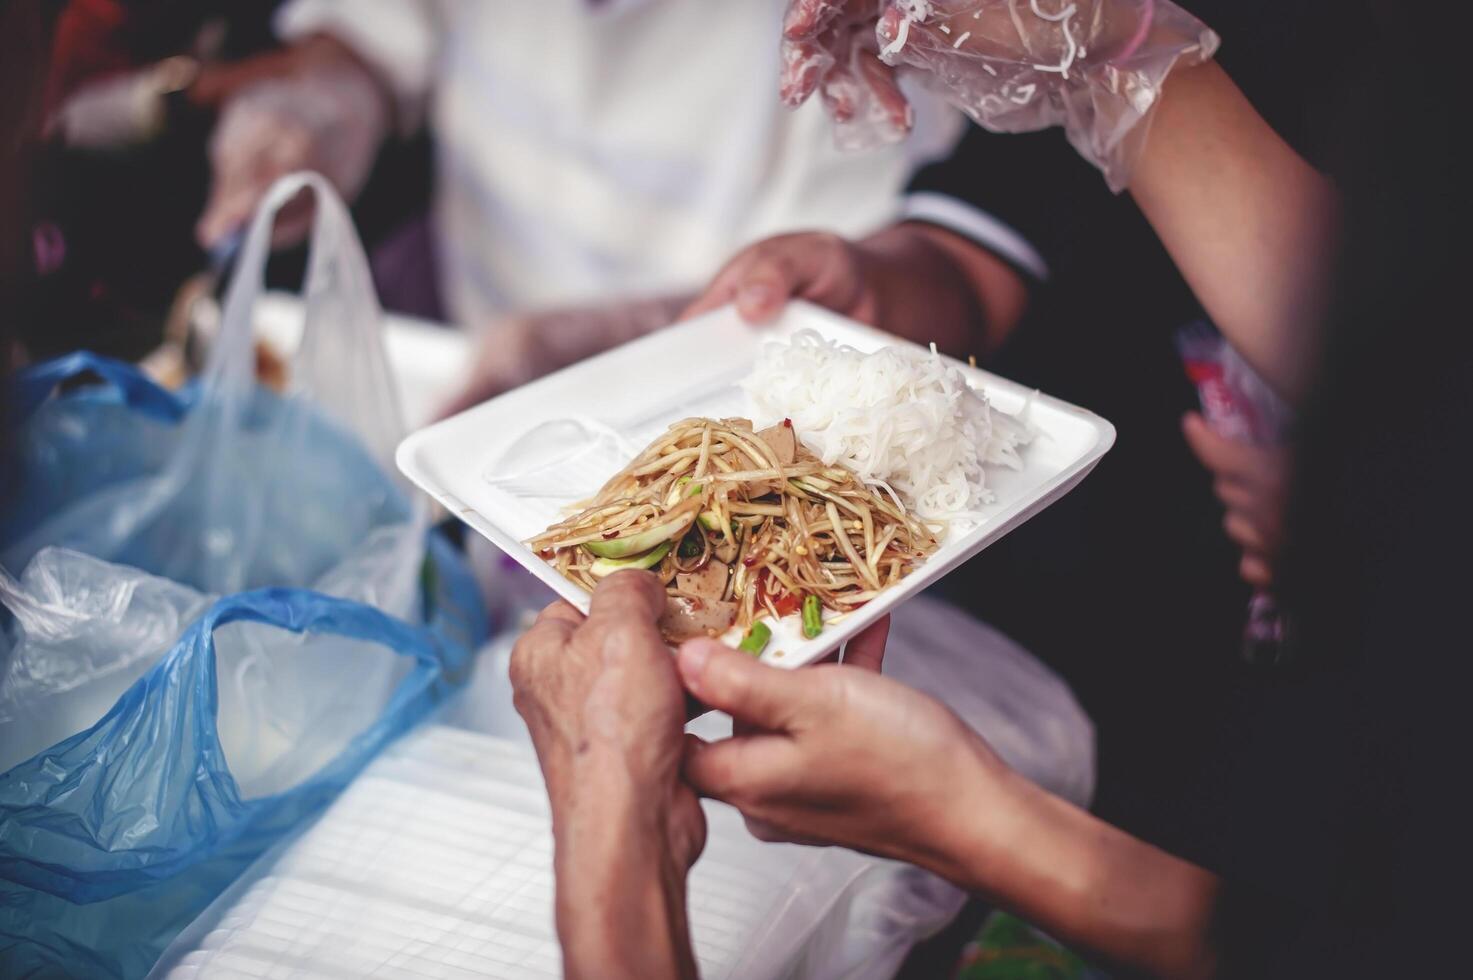 van hand- naar hand. sharing voedsel met dakloos foto